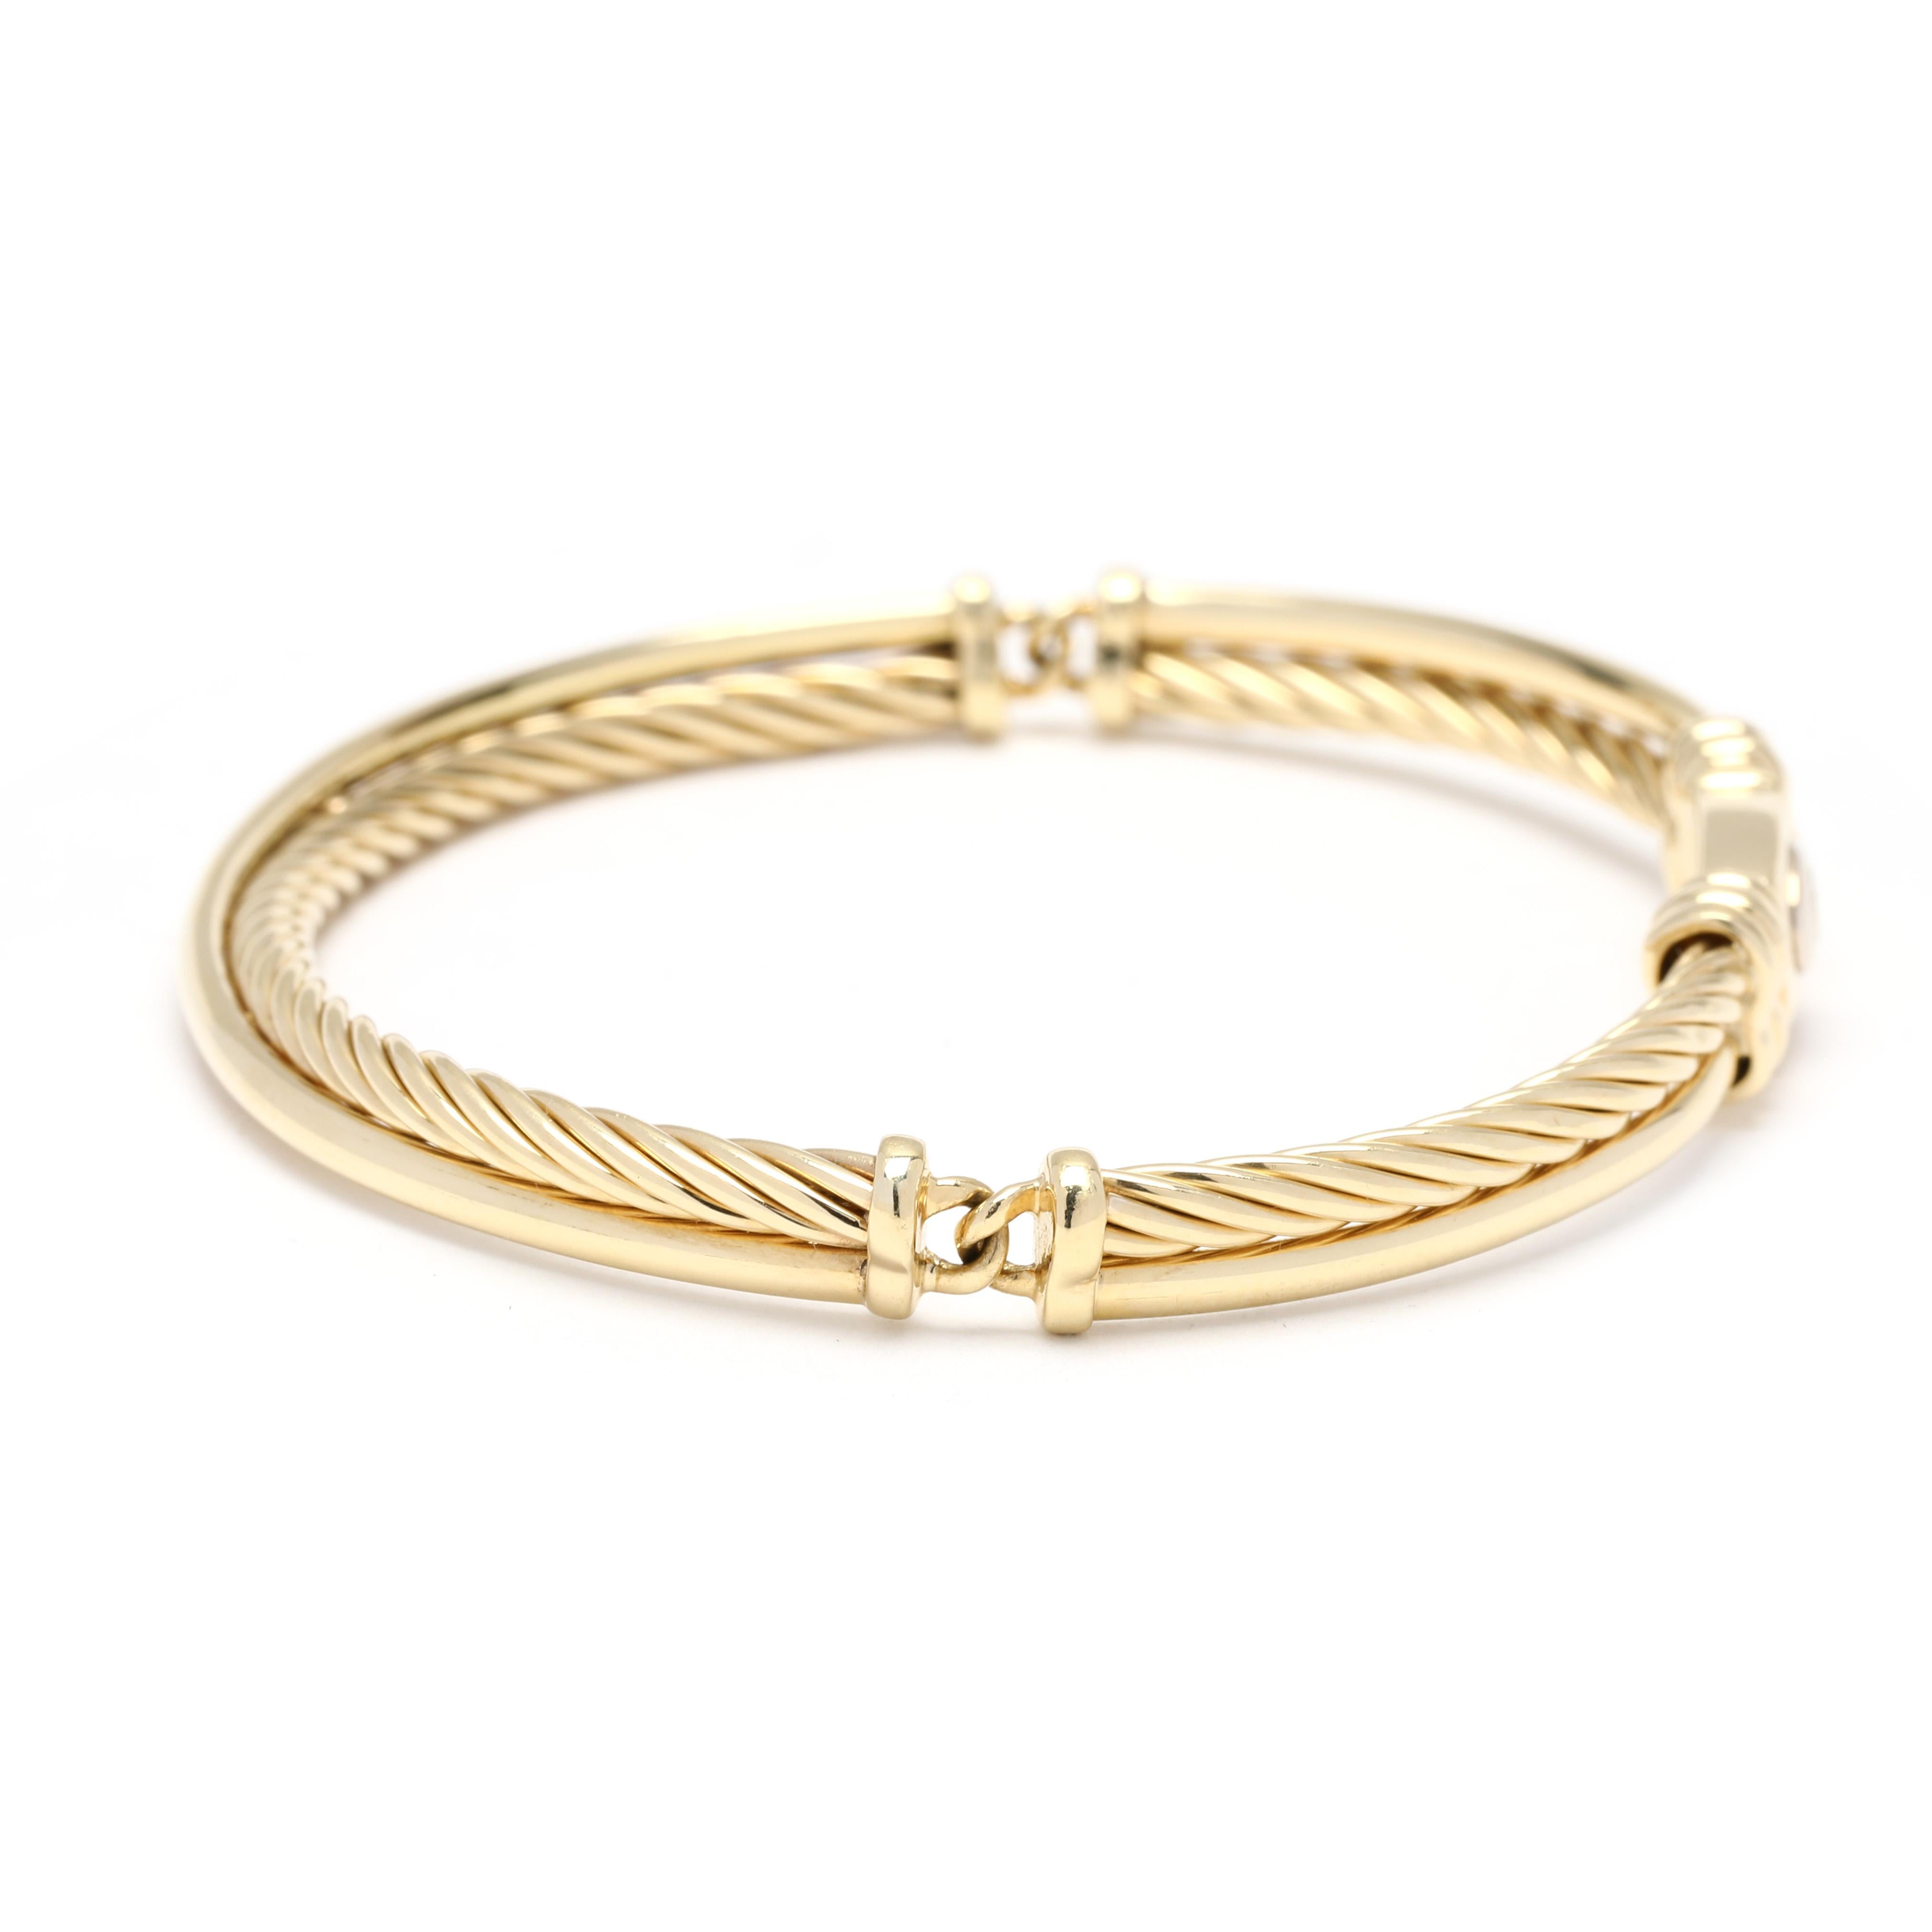 Ce bracelet glamour David Yurman en or 18 carats deviendra à coup sûr l'un de vos bijoux préférés. Fabriqué en or jaune 18 carats, cet élégant bracelet présente un design classique de câble croisé, parfait pour être porté avec des vêtements